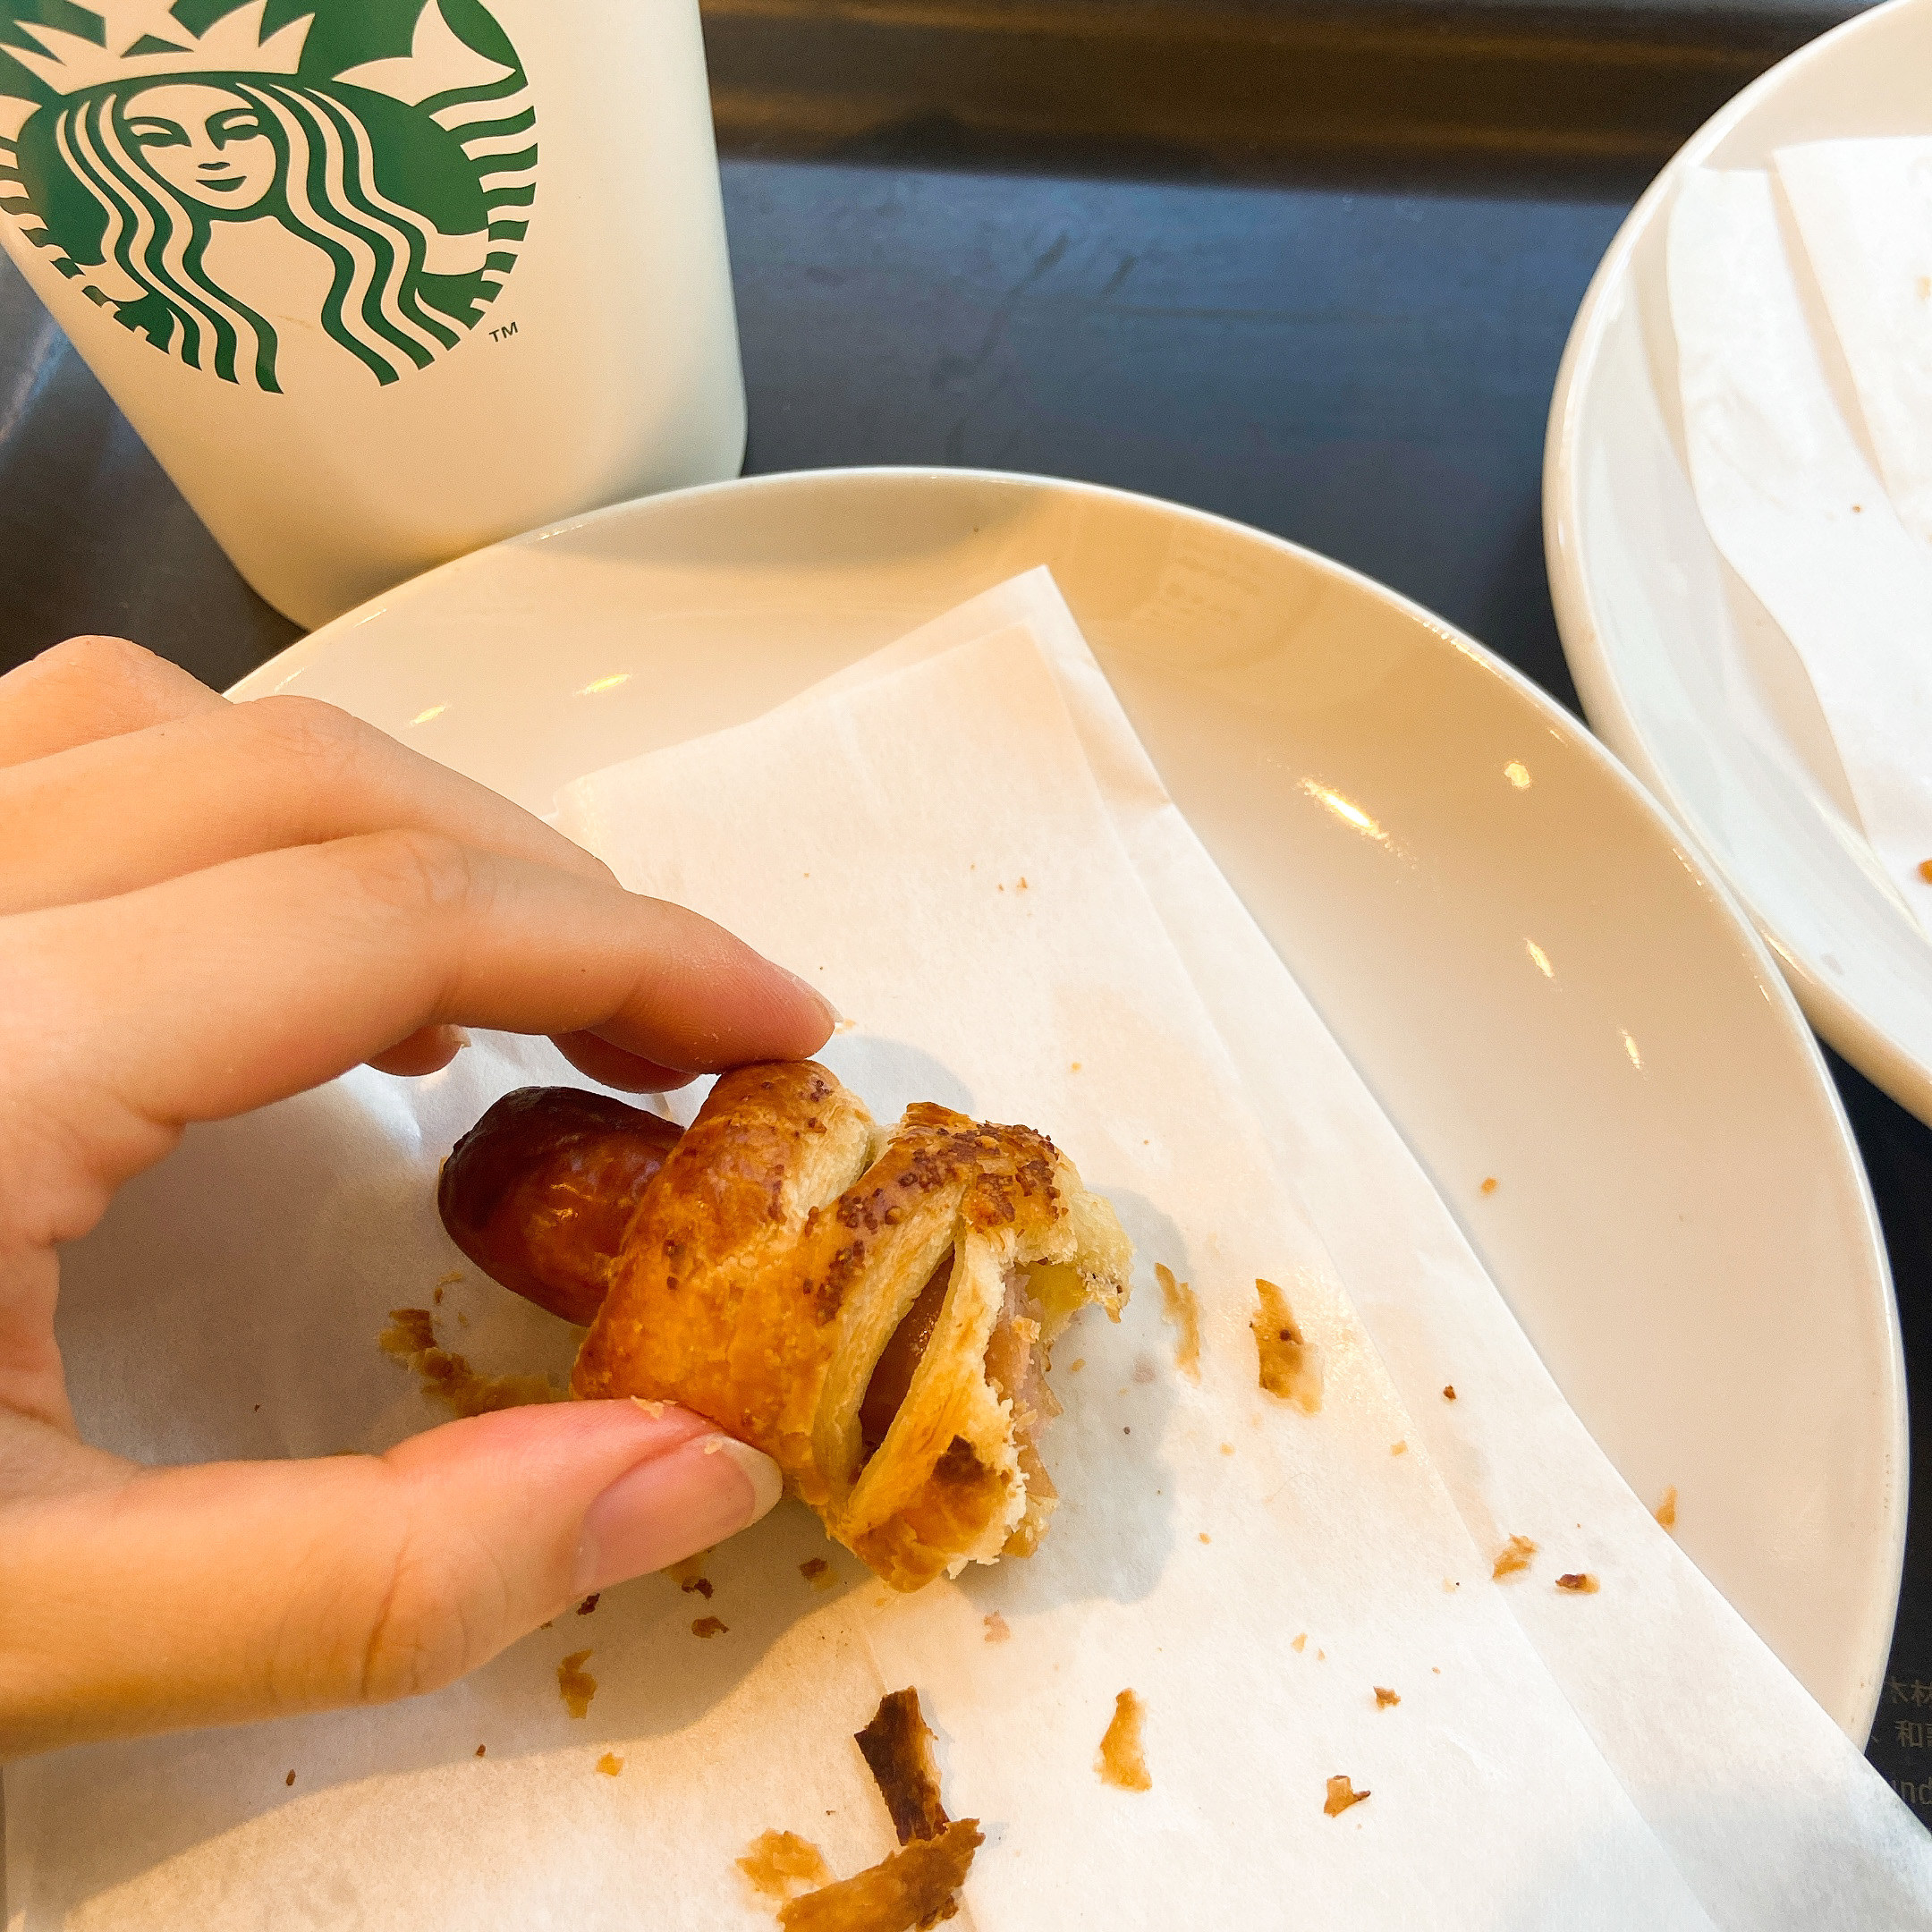 Starbucks Coffee（スターバックスコーヒー）のおすすめのフード「あらびきソーセージパイ」